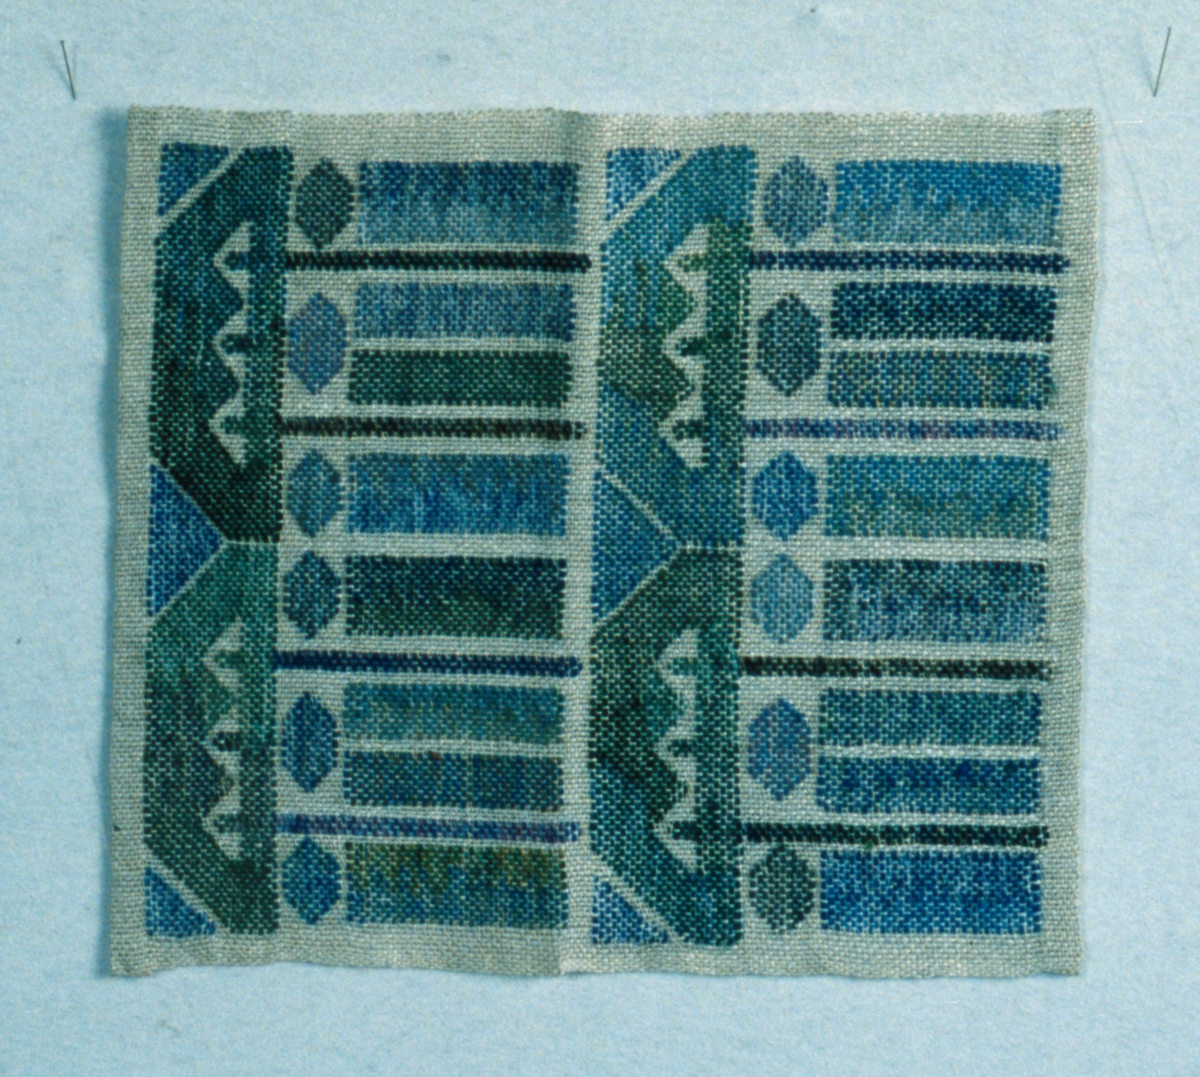 Duk i HV-teknik, vit och oblekt botten med mönster i gröna och blå nyanser, brunt och svart. Handfållad i två sidor.